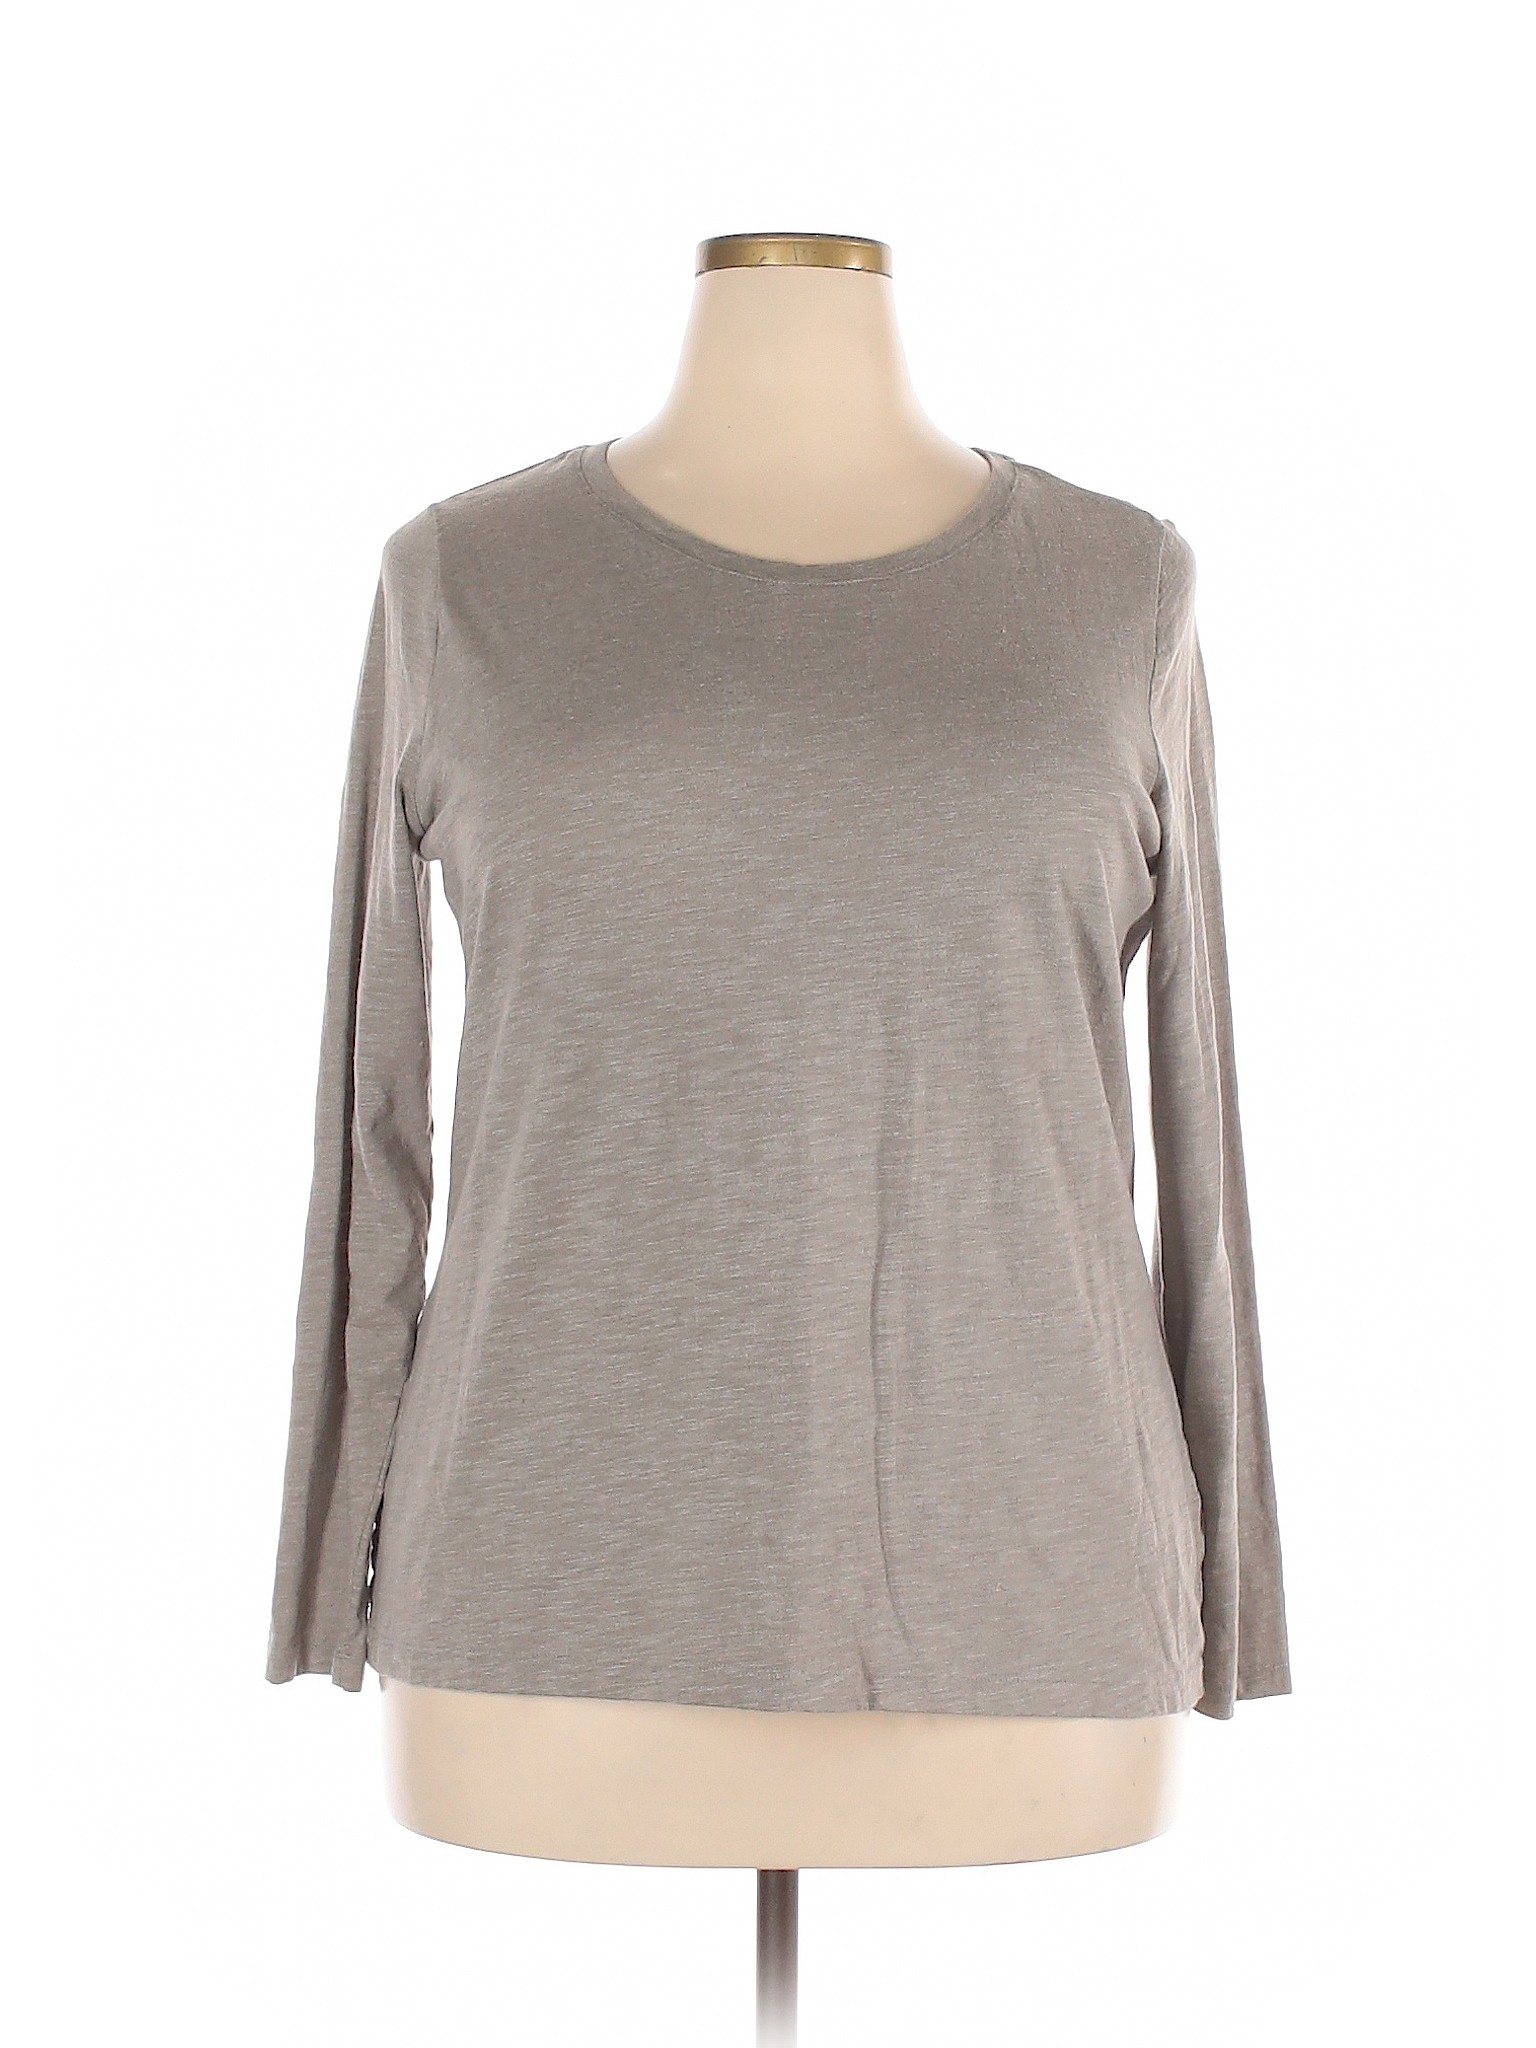 Sonoma Goods for Life Women Gray Long Sleeve T-Shirt XXL | eBay